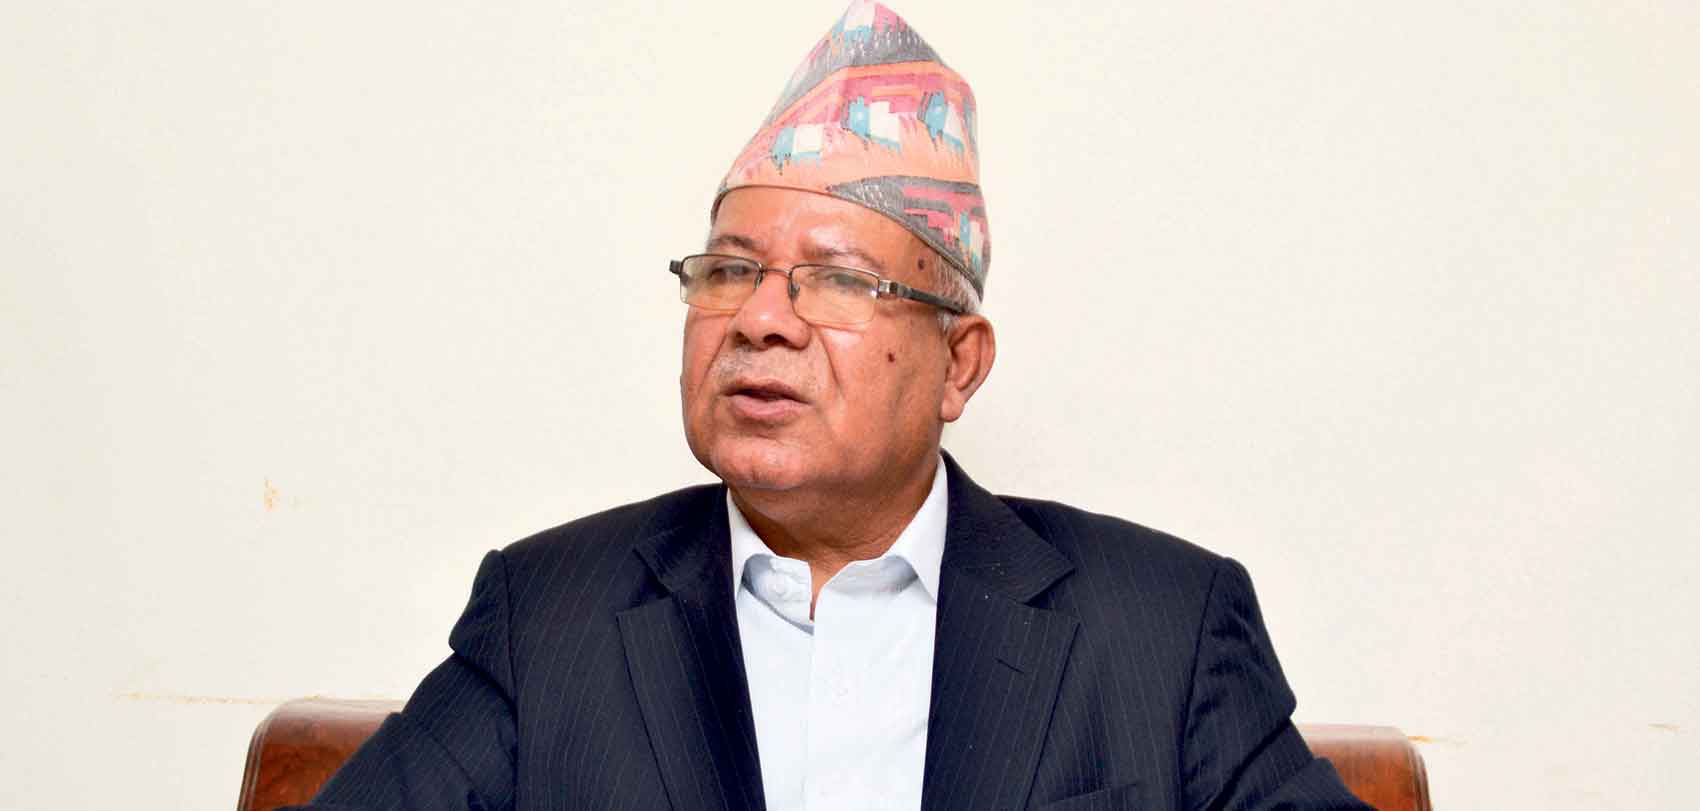 कोरोना संक्रमितको उपचार नगर्ने सरकारकोे निर्णय गैरजिम्मेवार : नेता नेपाल